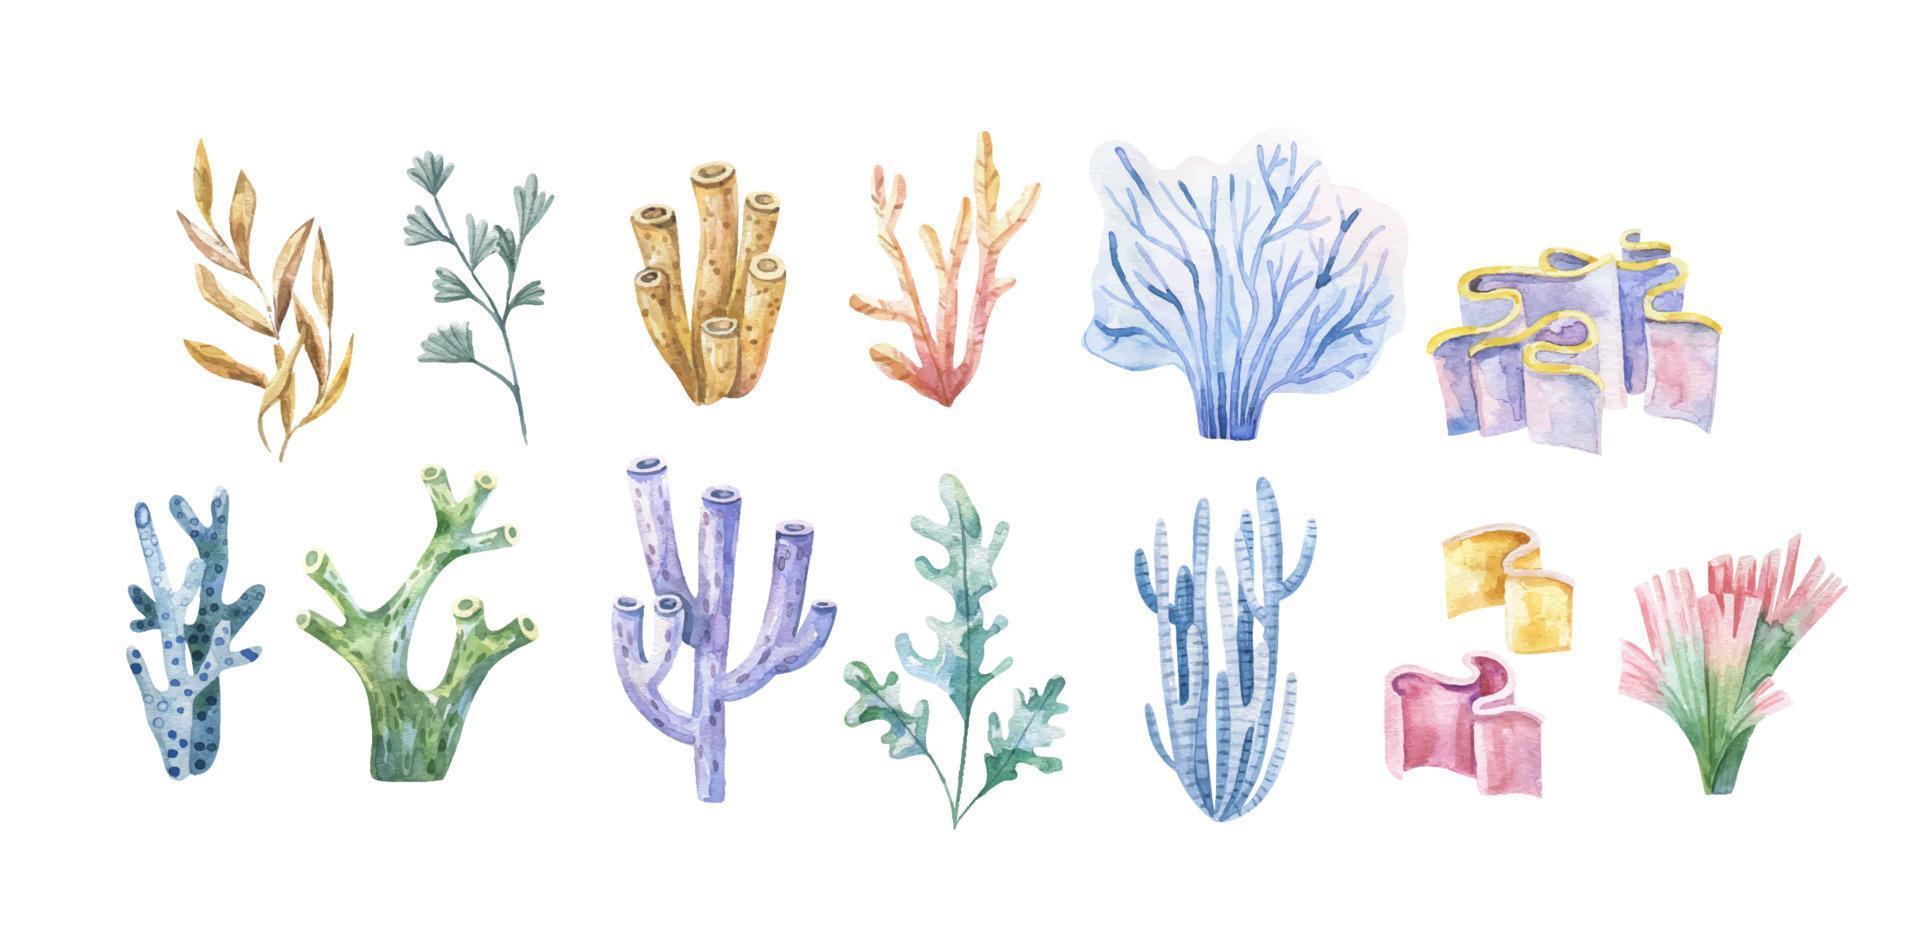 zeewier set. onderwater- planten. waterverf illustratie. oceaan. zee.zeewier algen, koraal rif ontwerp element. aquarium planten silhouetten vector